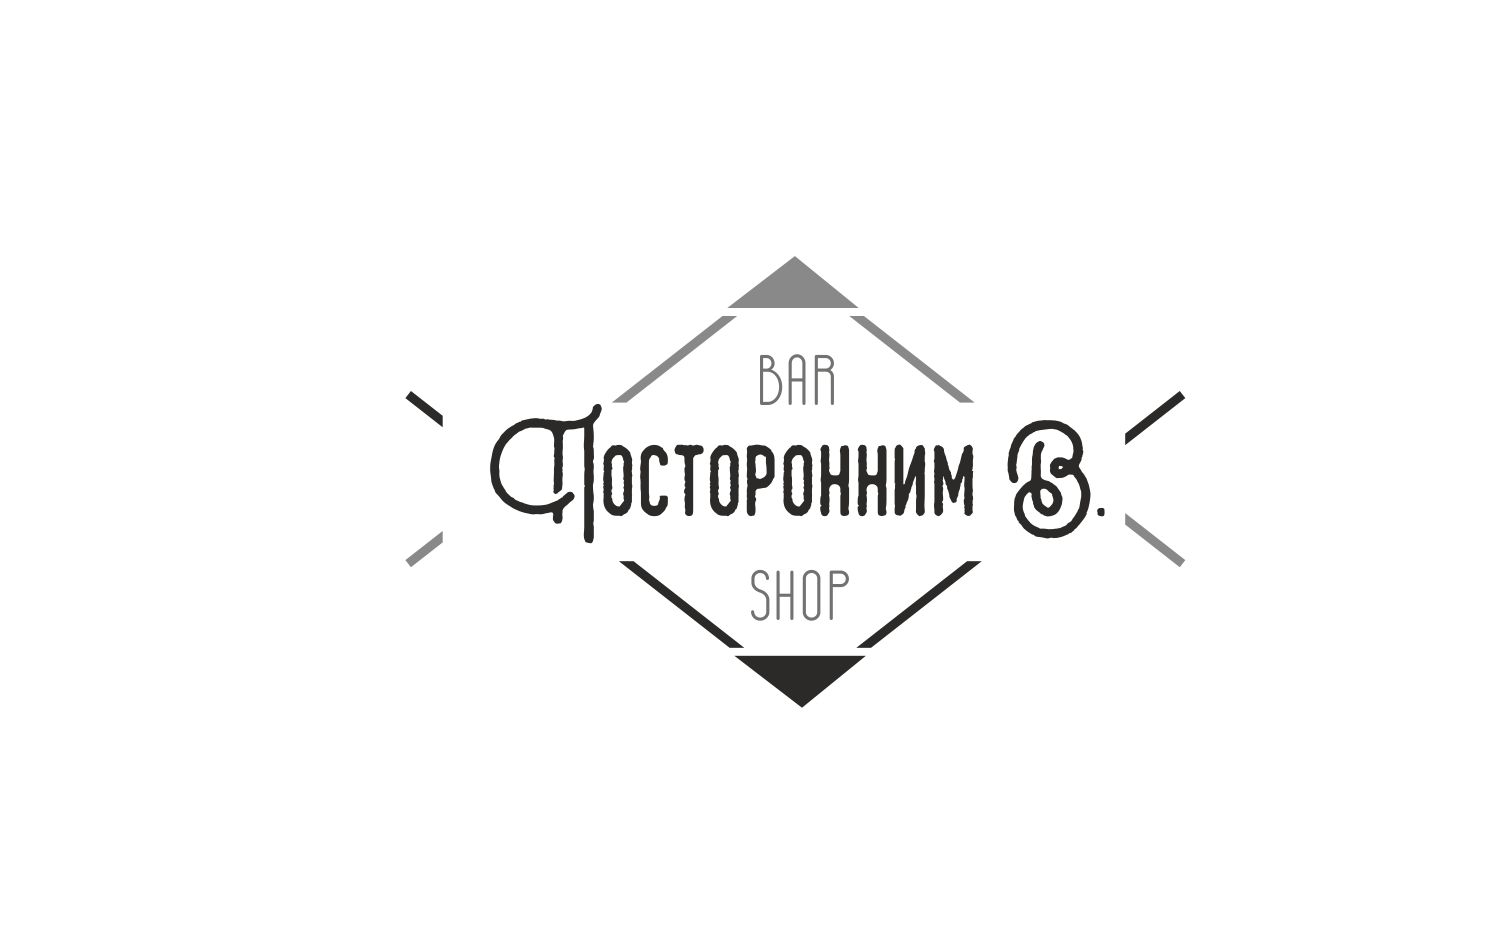 Логотип для Посторонним В. - дизайнер Irisa85